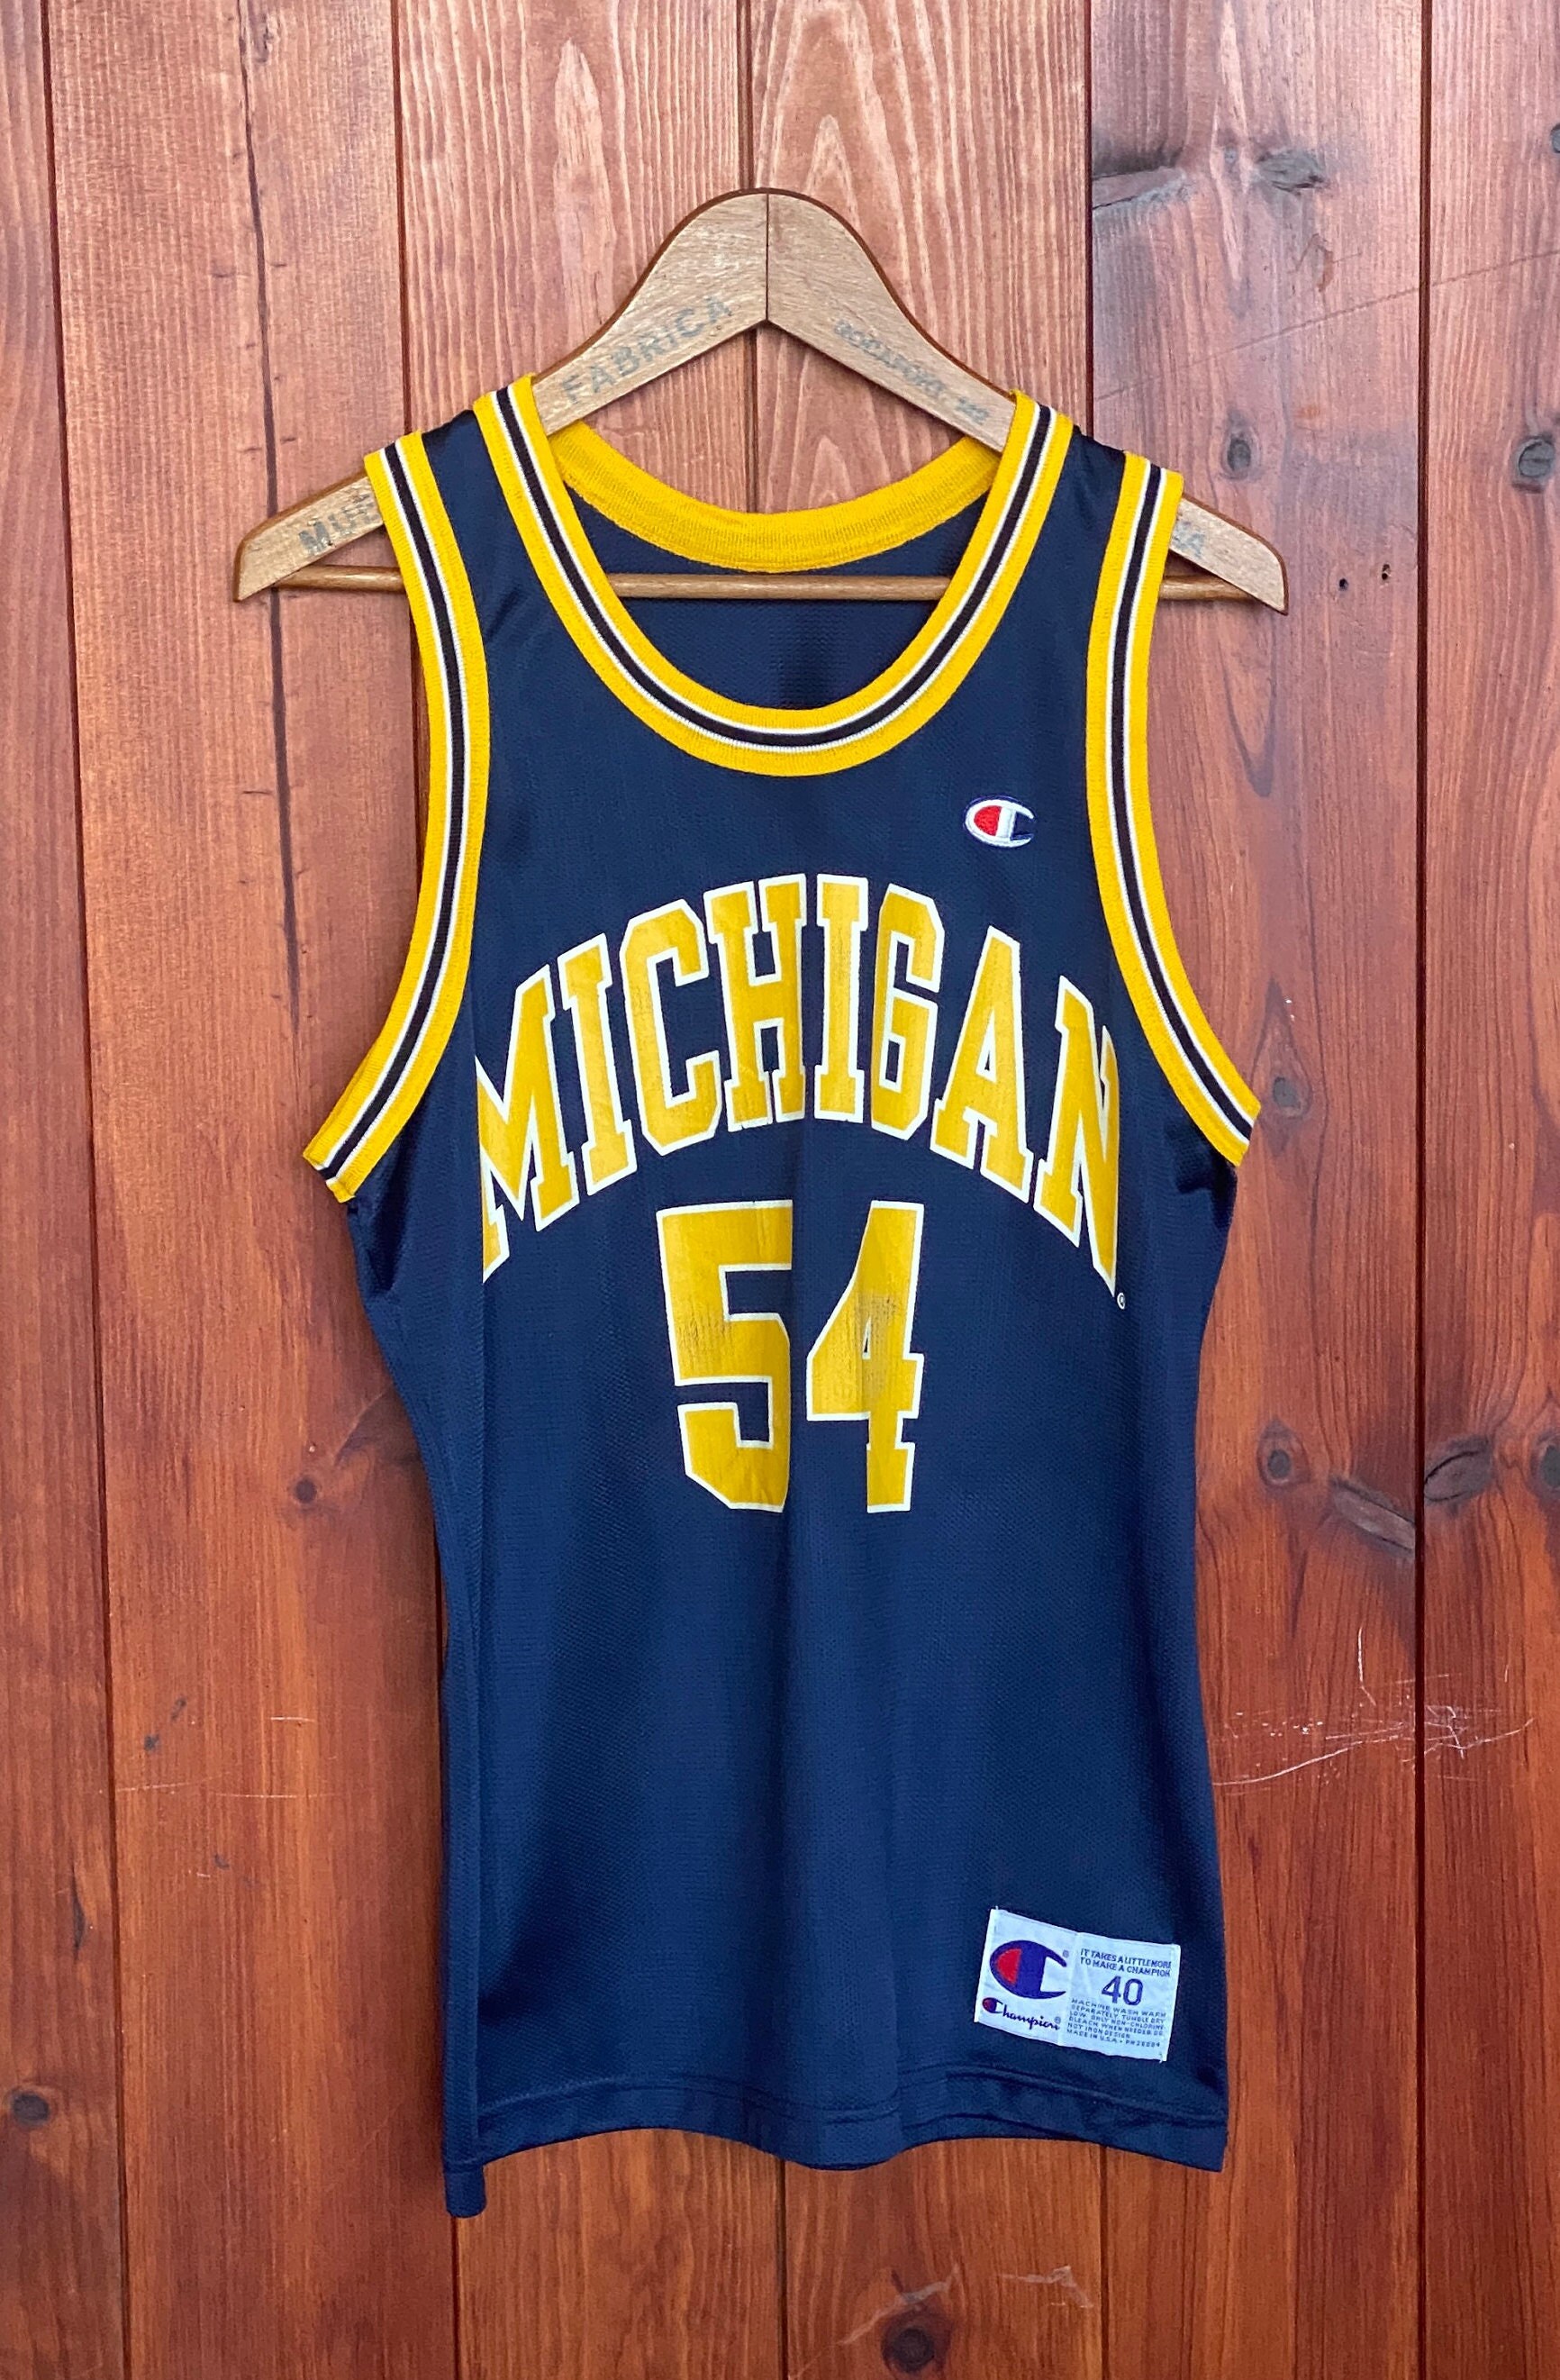 University michigan wolverines basketball jersey 90s large